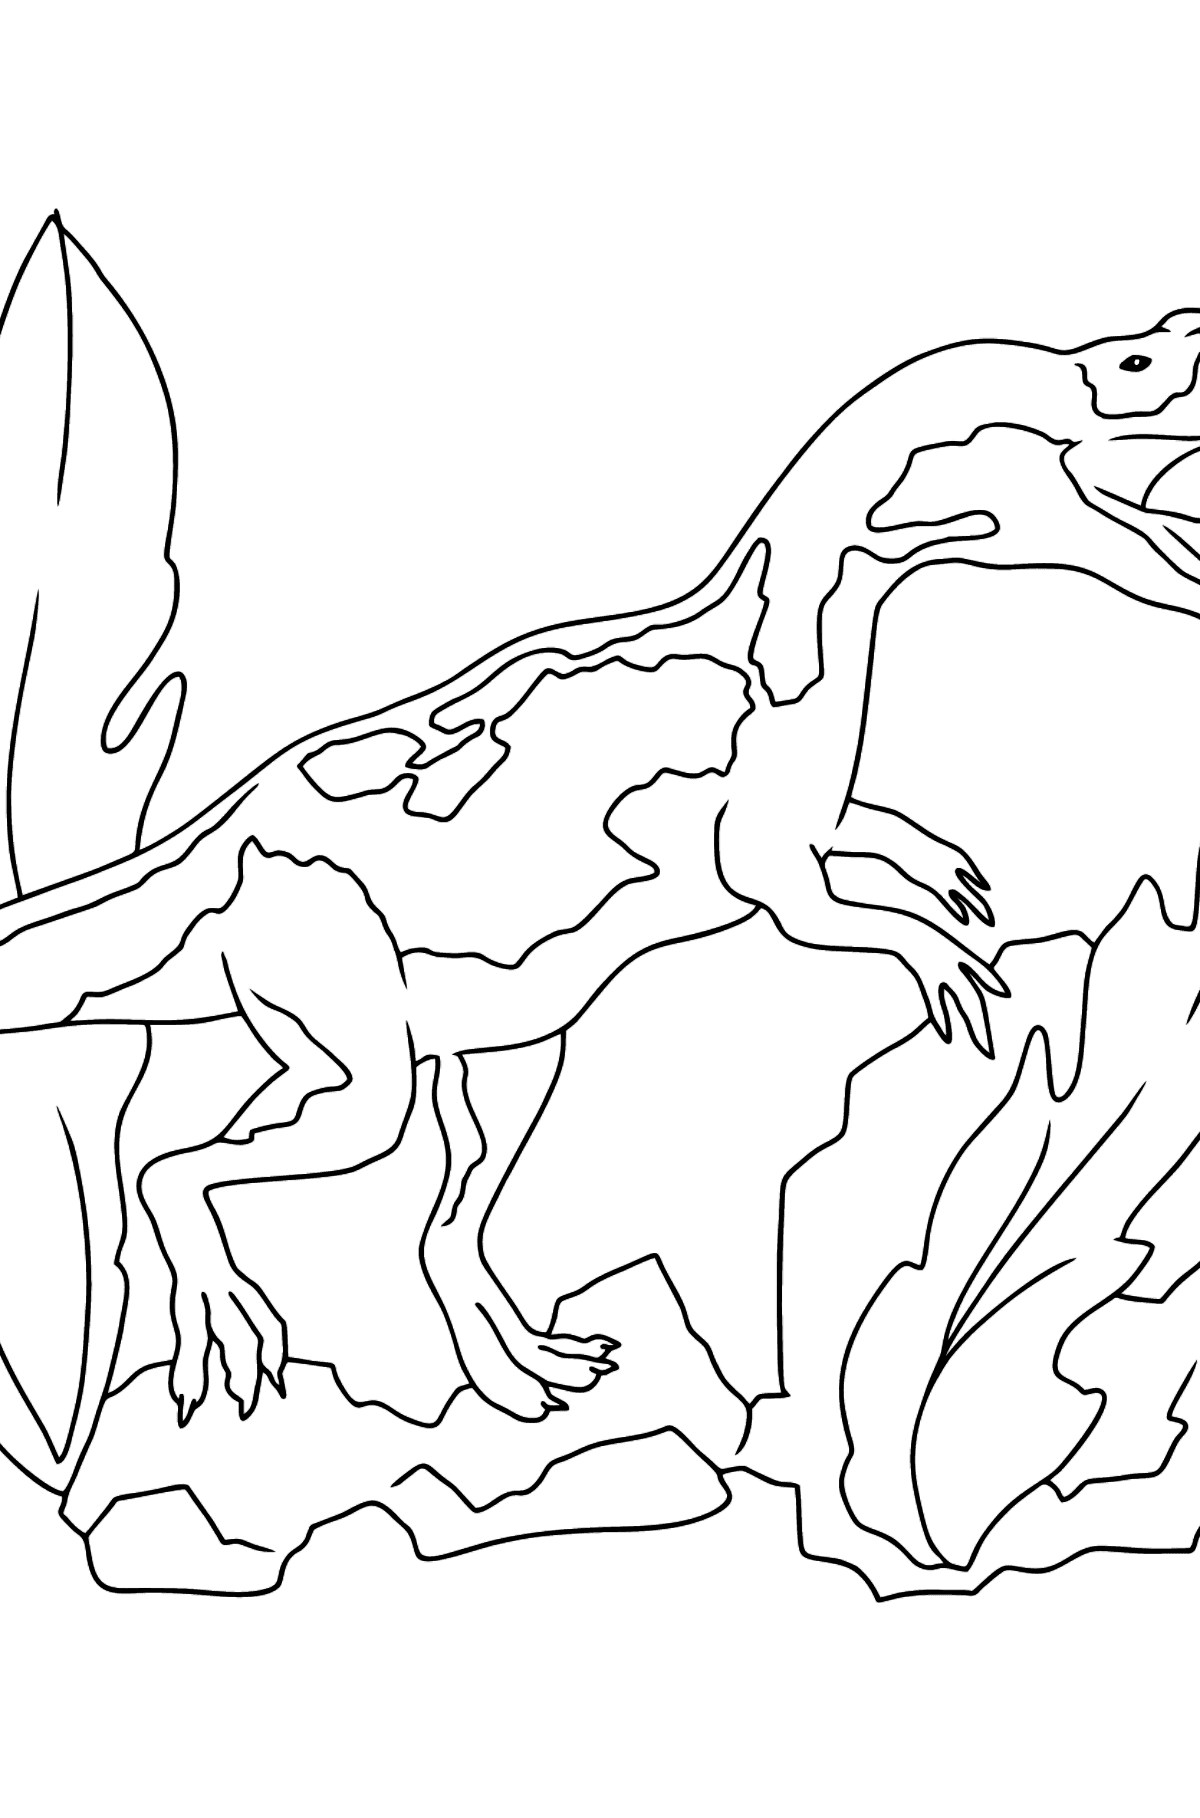 Desenho para colorir de dinossauro jurássico (fácil) - Imagens para Colorir para Crianças